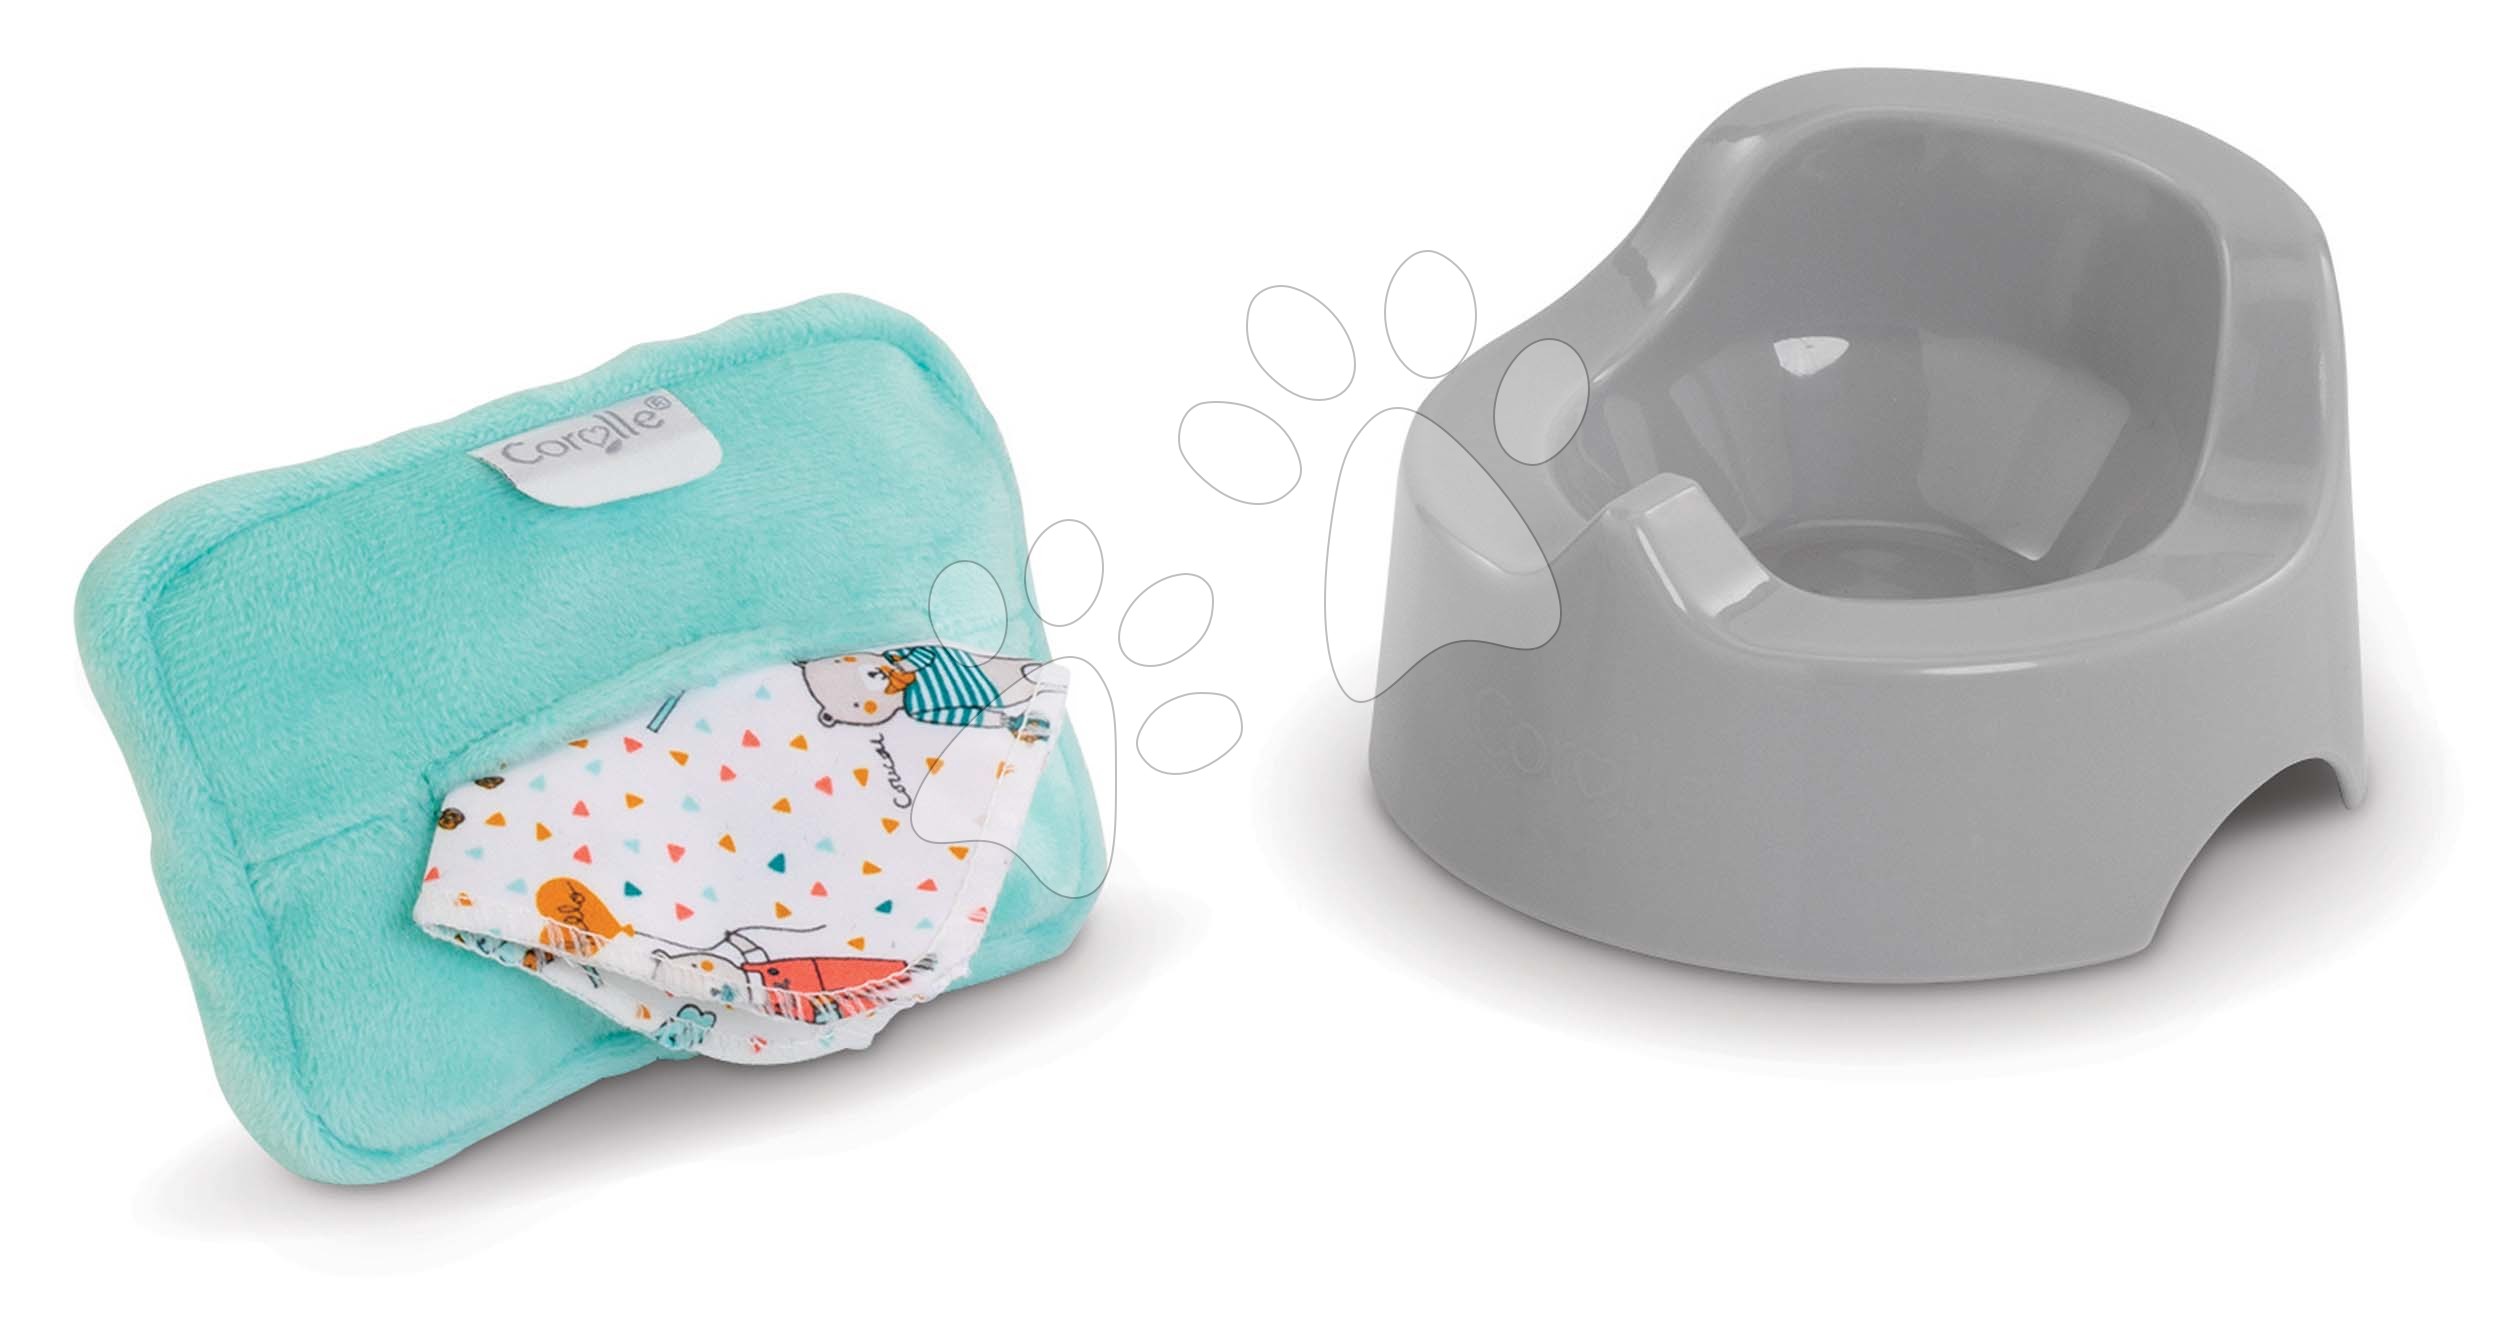 Bili törlőkendőkkel Potty & Baby Wipe Corolle 30 cm játékbabának 2 kiegészítő 18 hó-tól